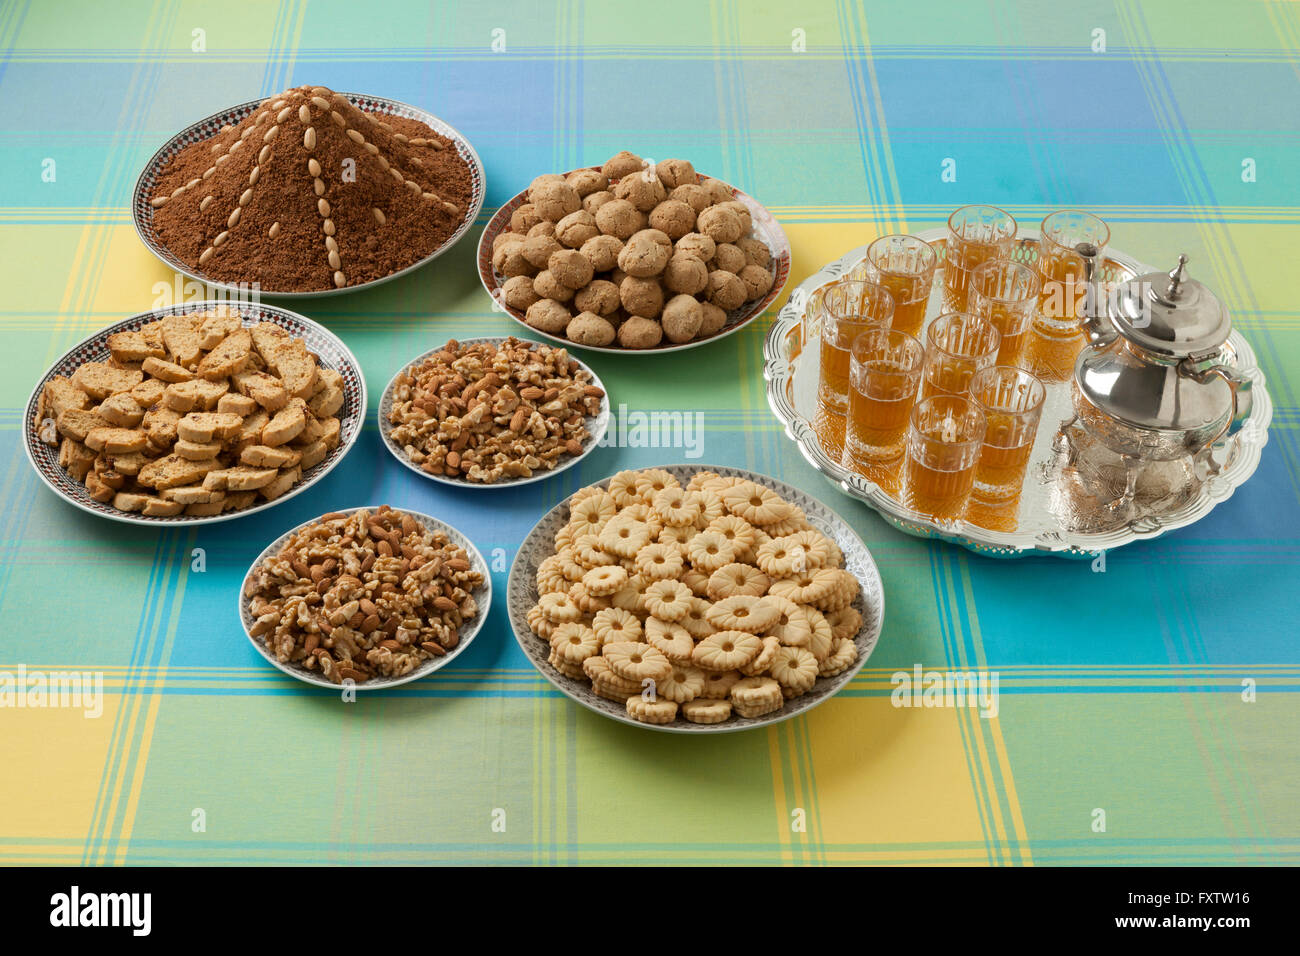 Platos con galletas caseras festiva marroquí, nueces y té Foto de stock